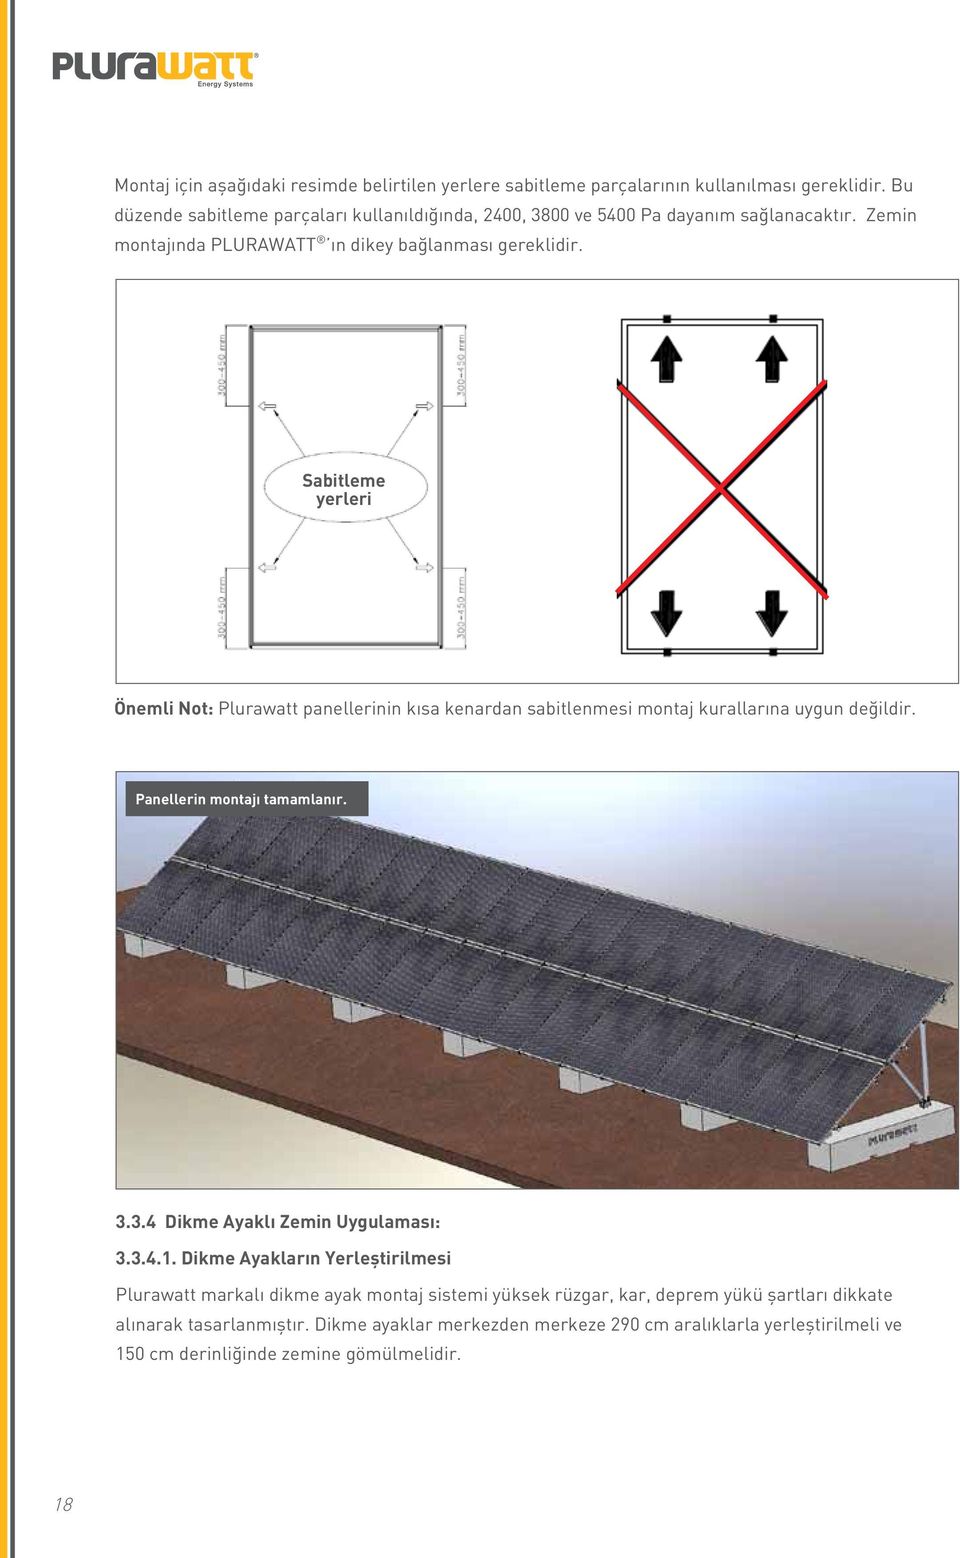 Sabitleme yerleri Önemli Not: Plurawatt panellerinin kısa kenardan sabitlenmesi montaj kurallarına uygun değildir. Panellerin montajı tamamlanır. 3.